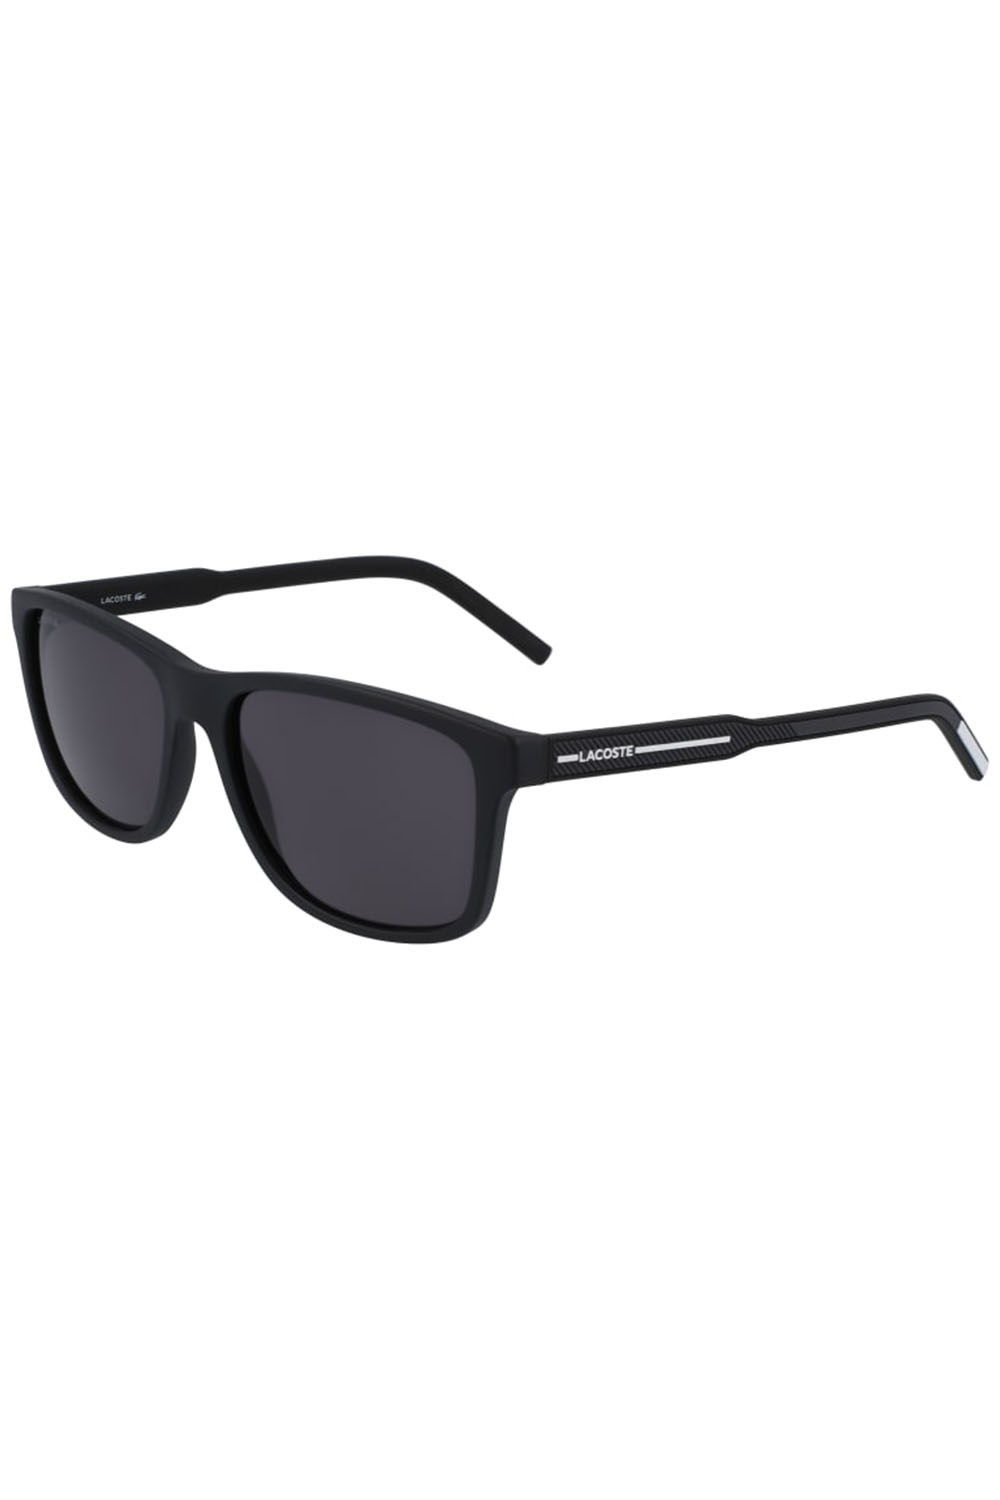 L931s Unisex Sunglasses -